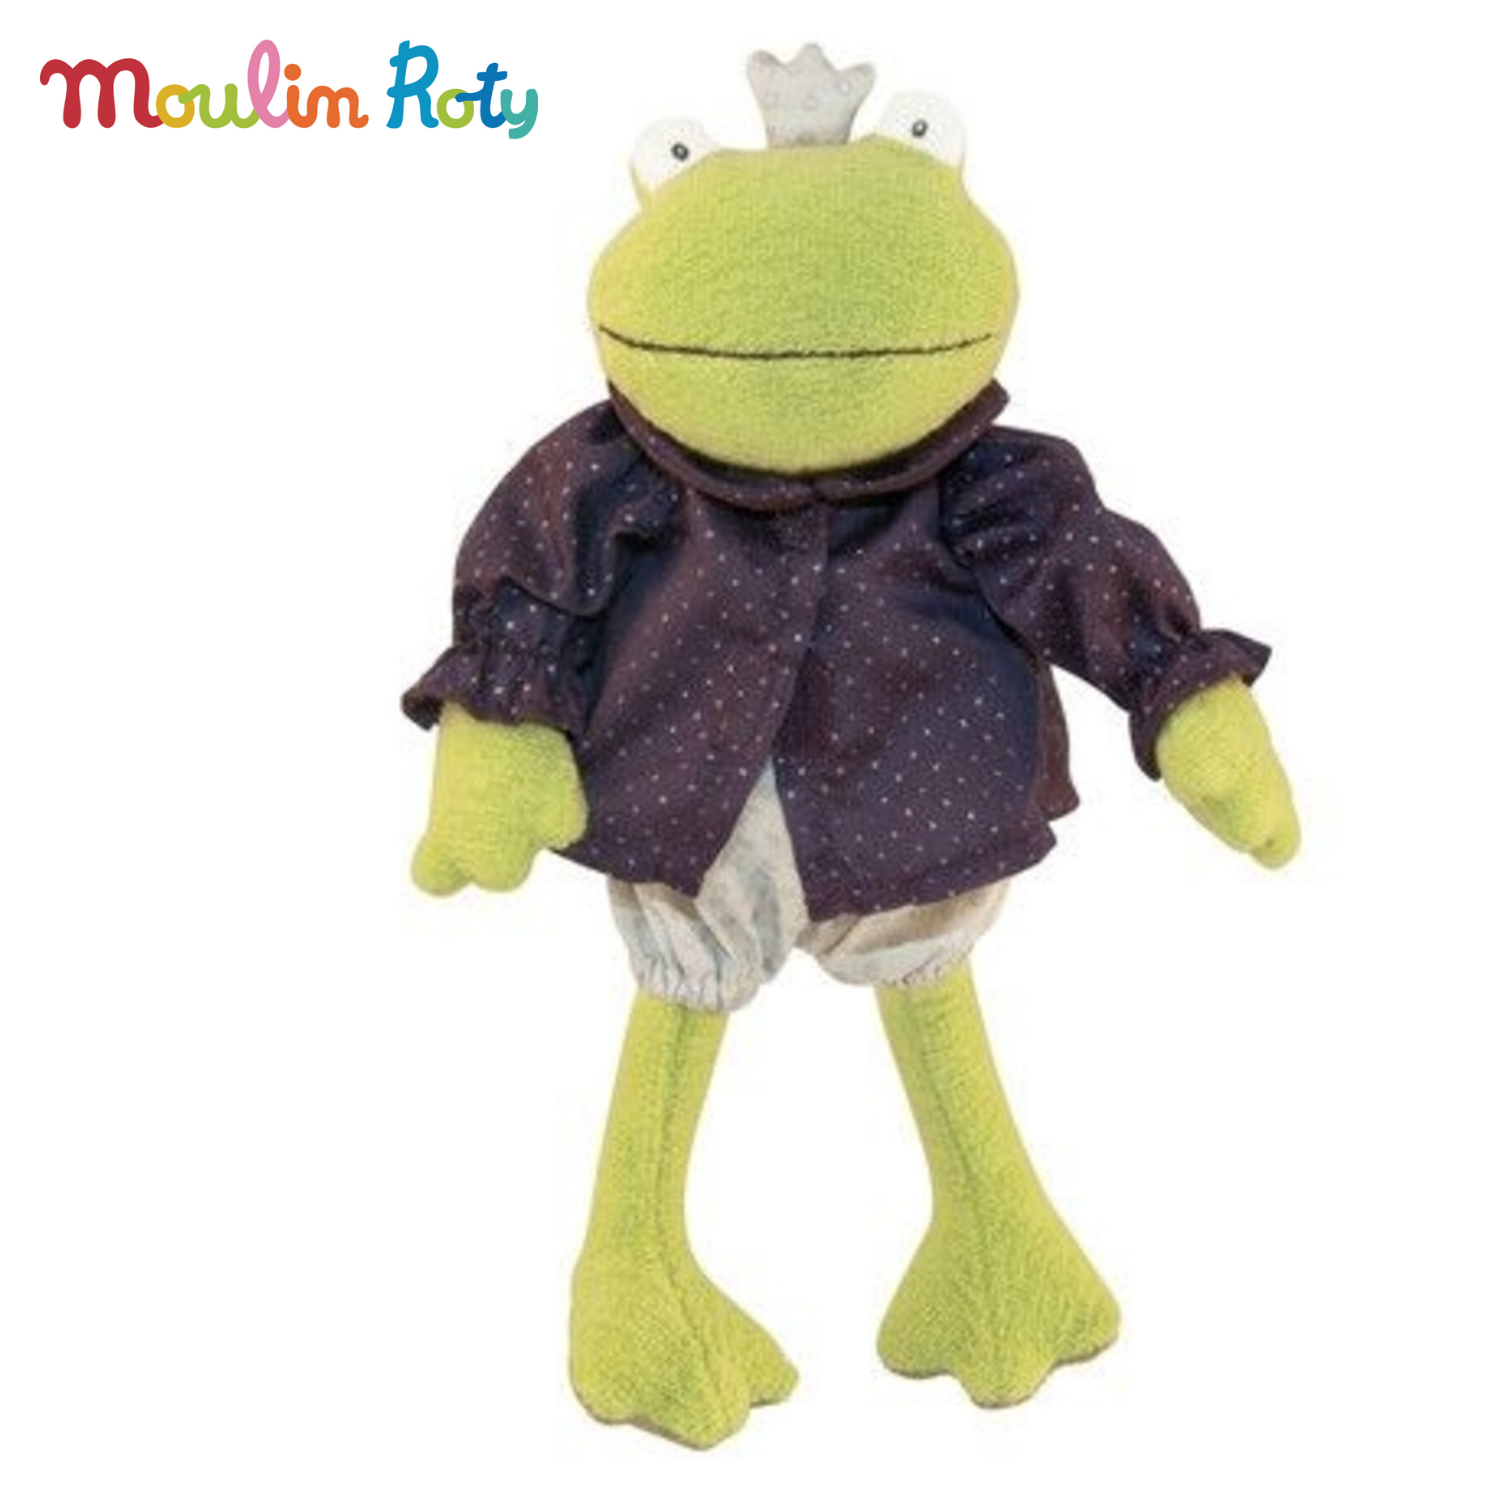 Moulin Roty ตุ๊กตาเจ้าชายกบ ตุ๊กตากบ ถอดเสื้อผ้าได้ ขนาดสูง 31cm. MR-711205